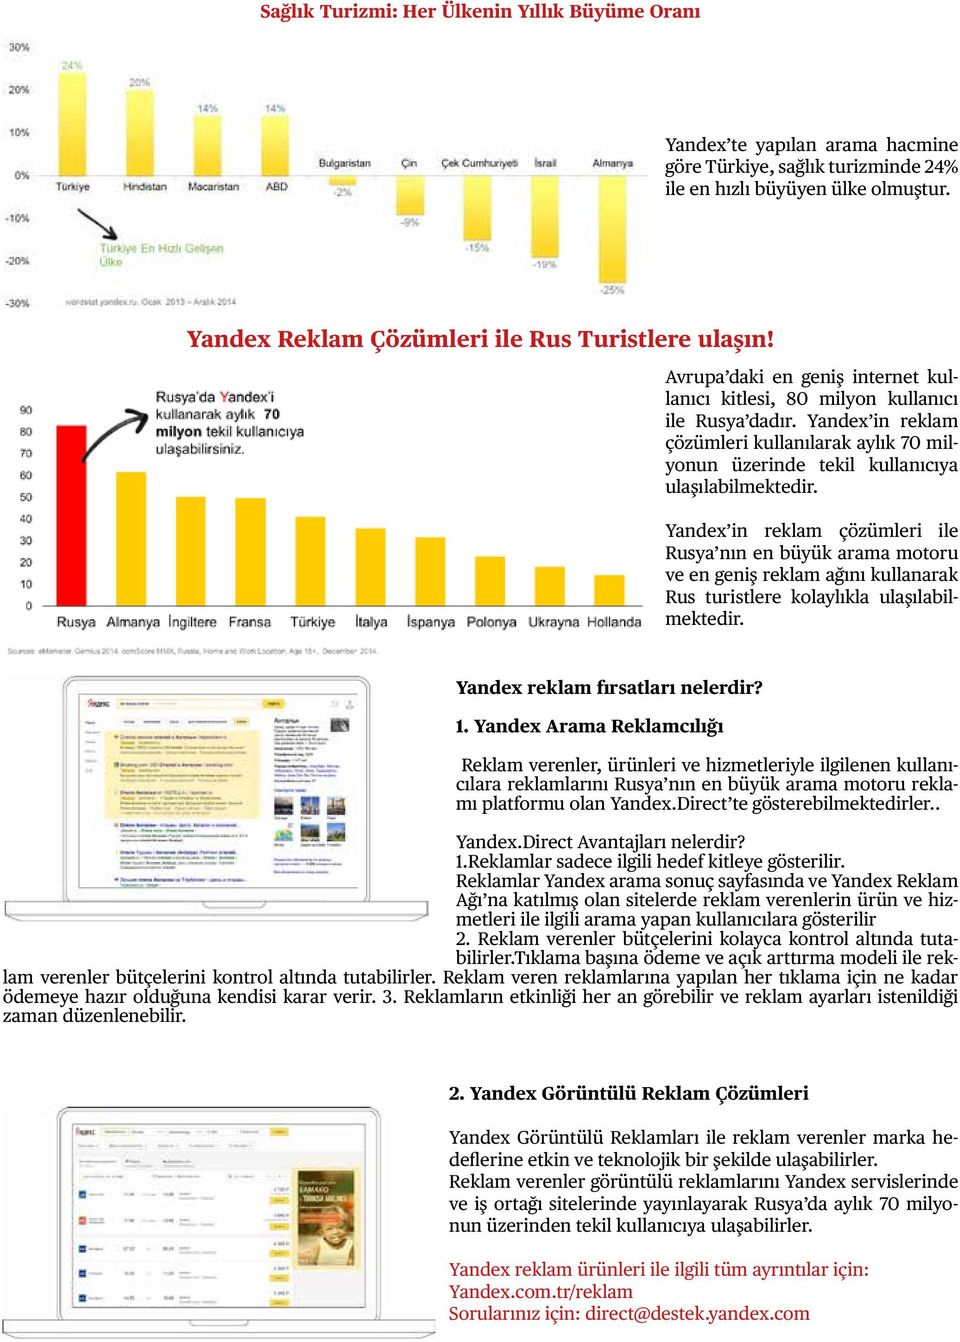 Yandex in reklam çözümleri kullanılarak aylık 70 milyonun üzerinde tekil kullanıcıya ulaşılabilmektedir.